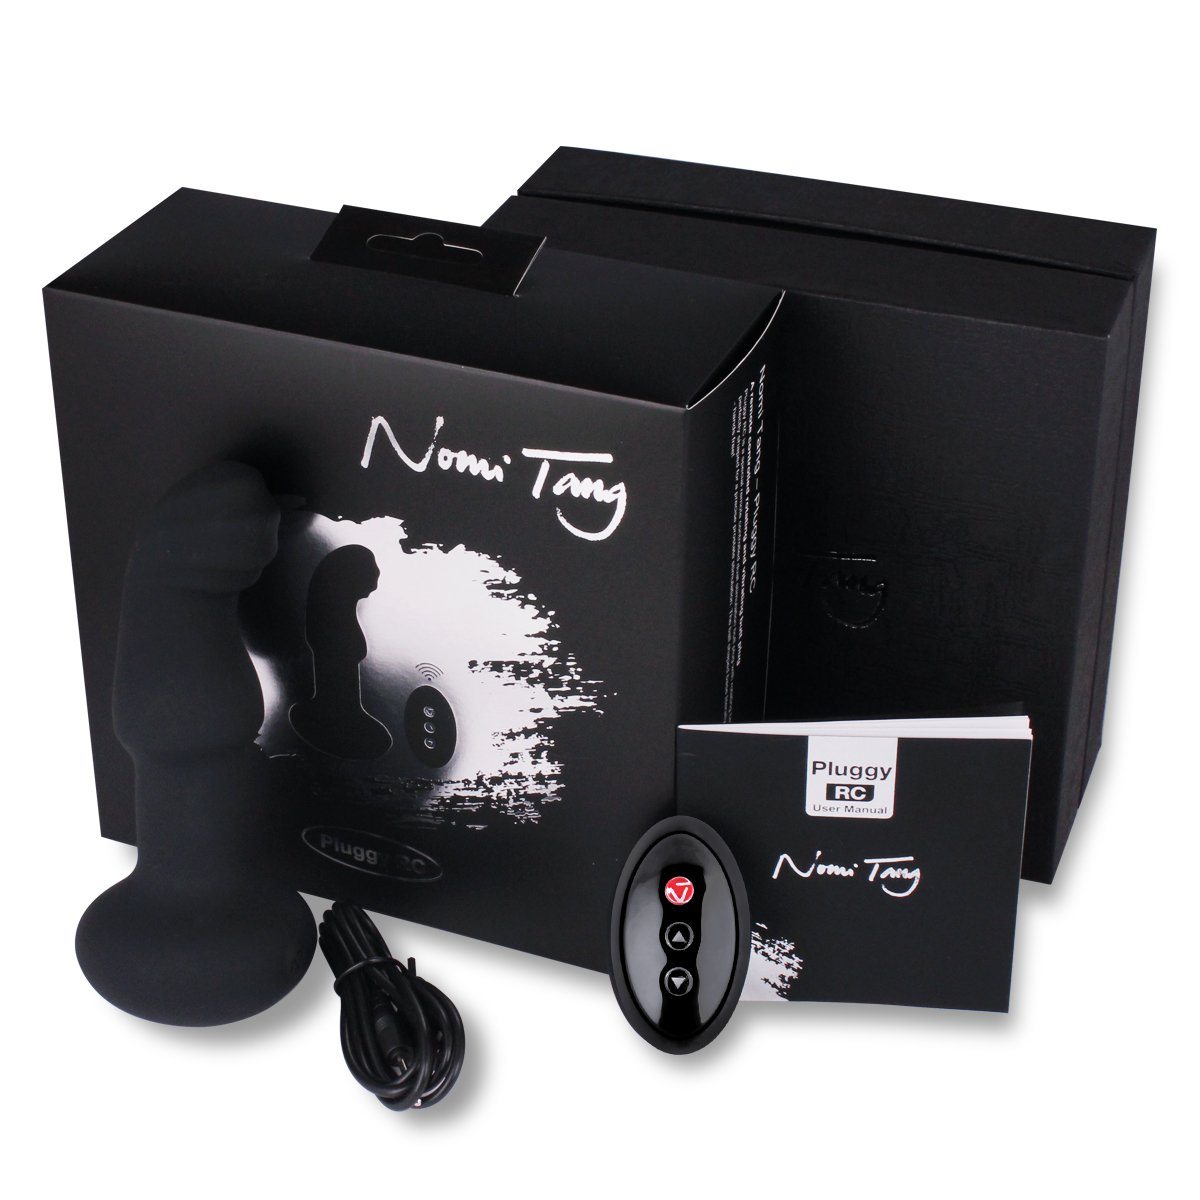 NOMI TANG Pluggy RC 遙控旋轉前列腺震動器 所有前列腺按摩器 購買